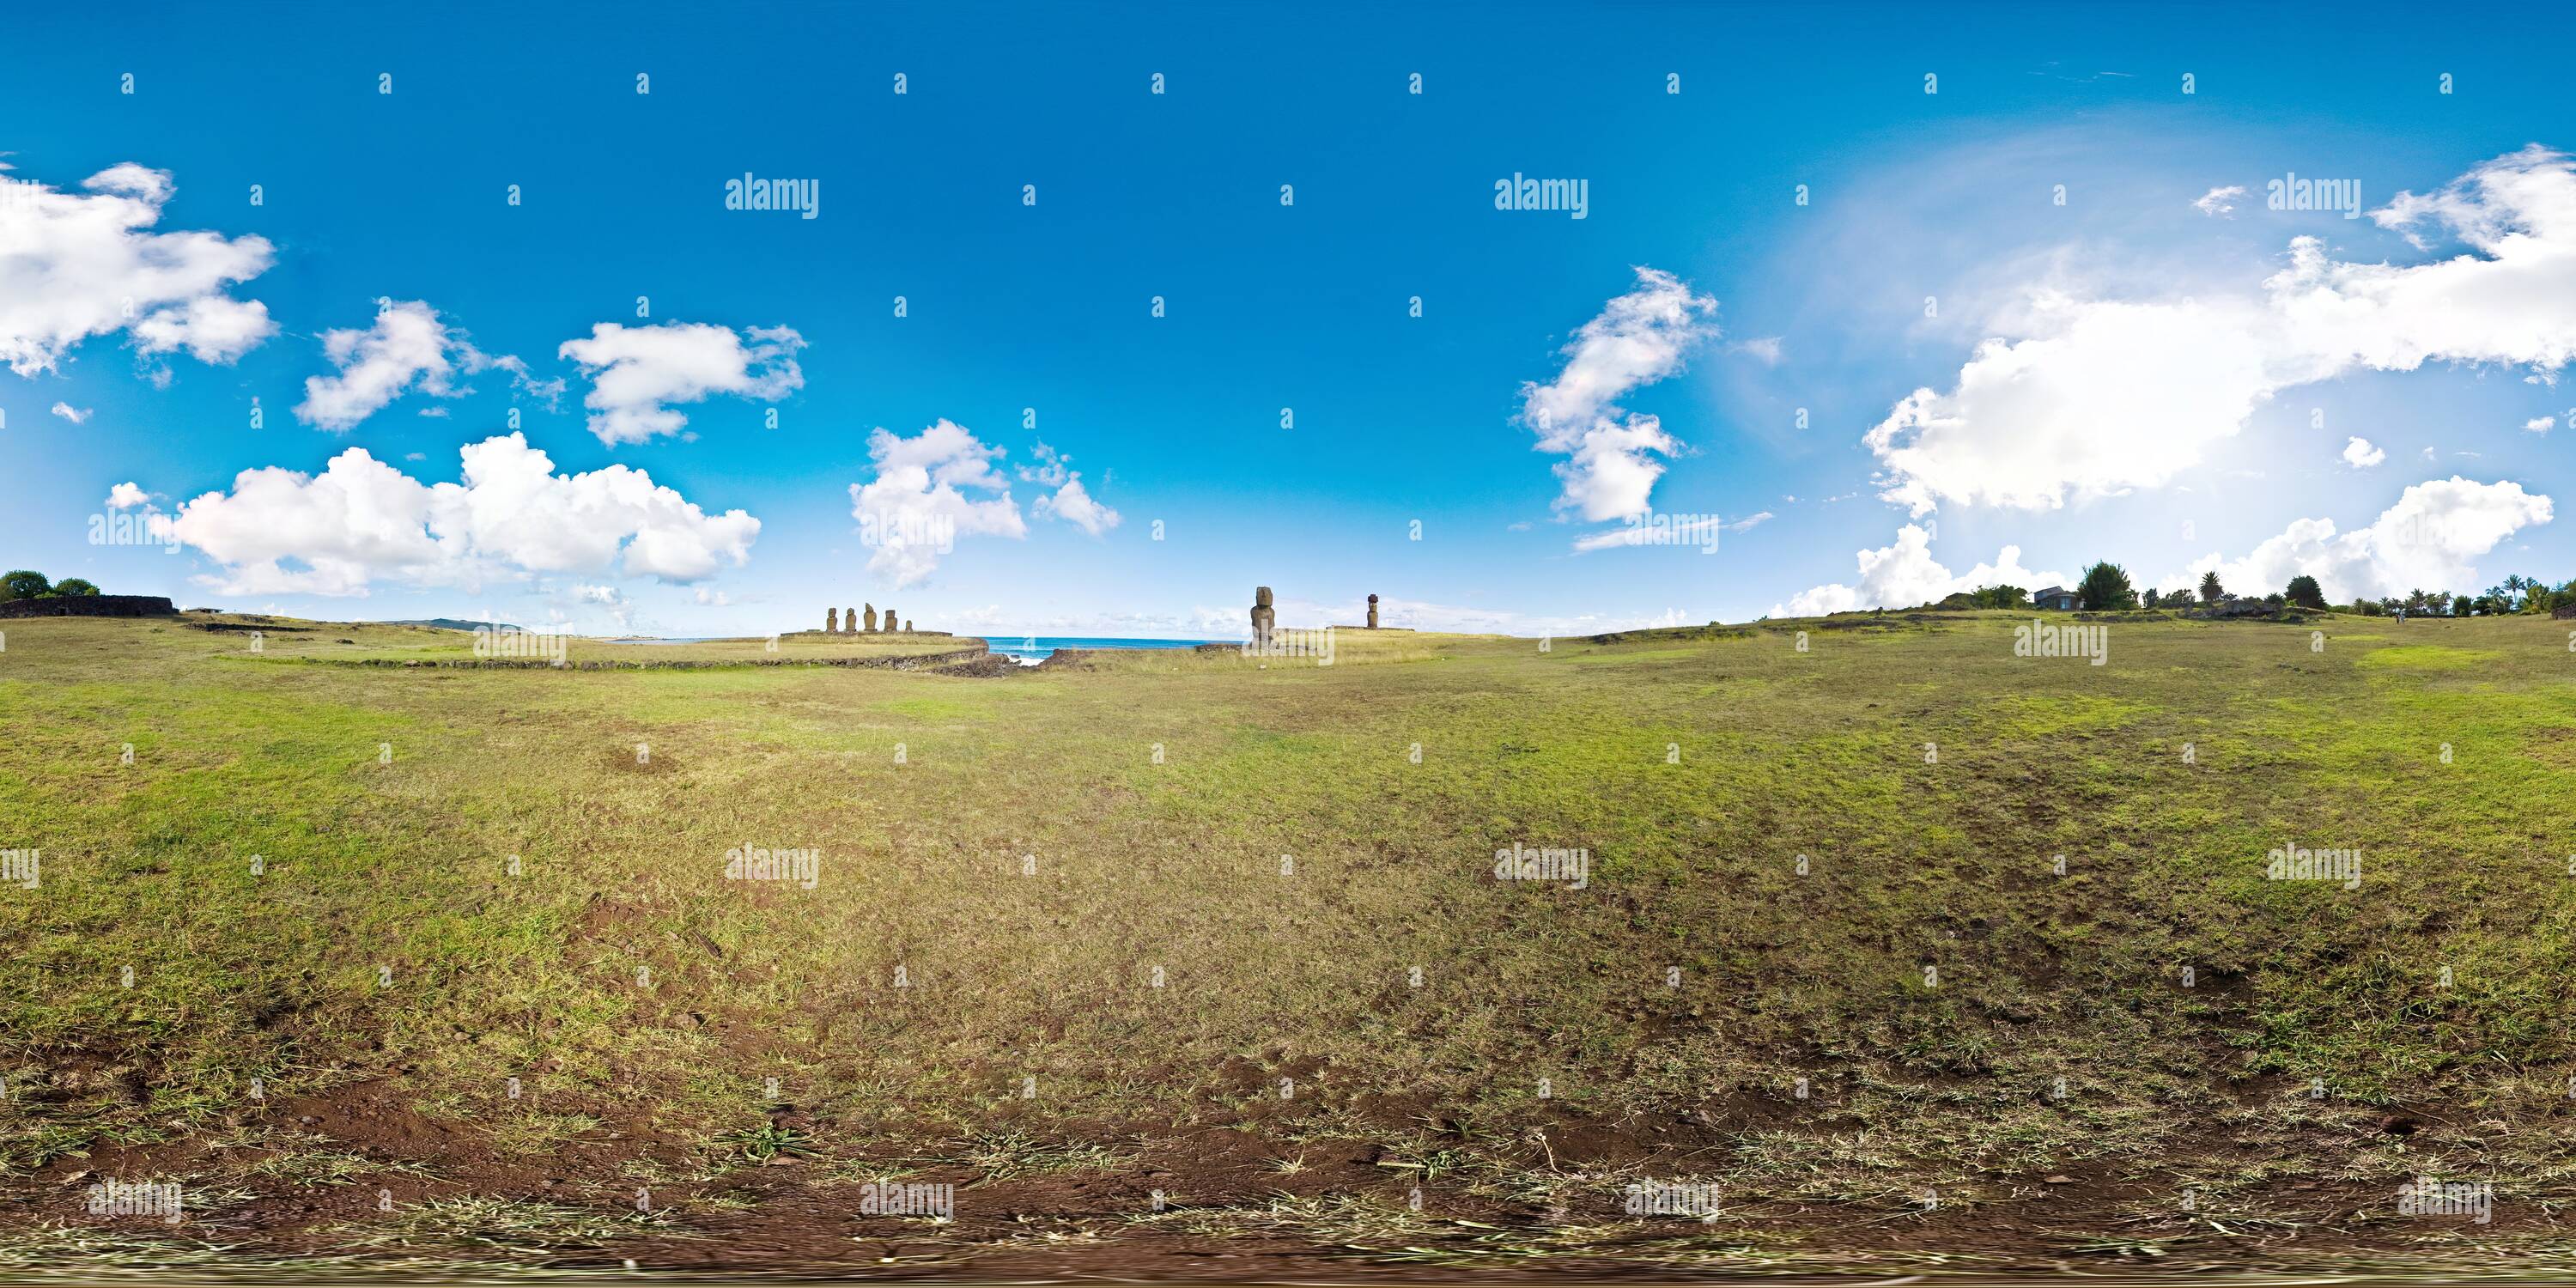 Visualizzazione panoramica a 360 gradi di Tahai : nel mezzo